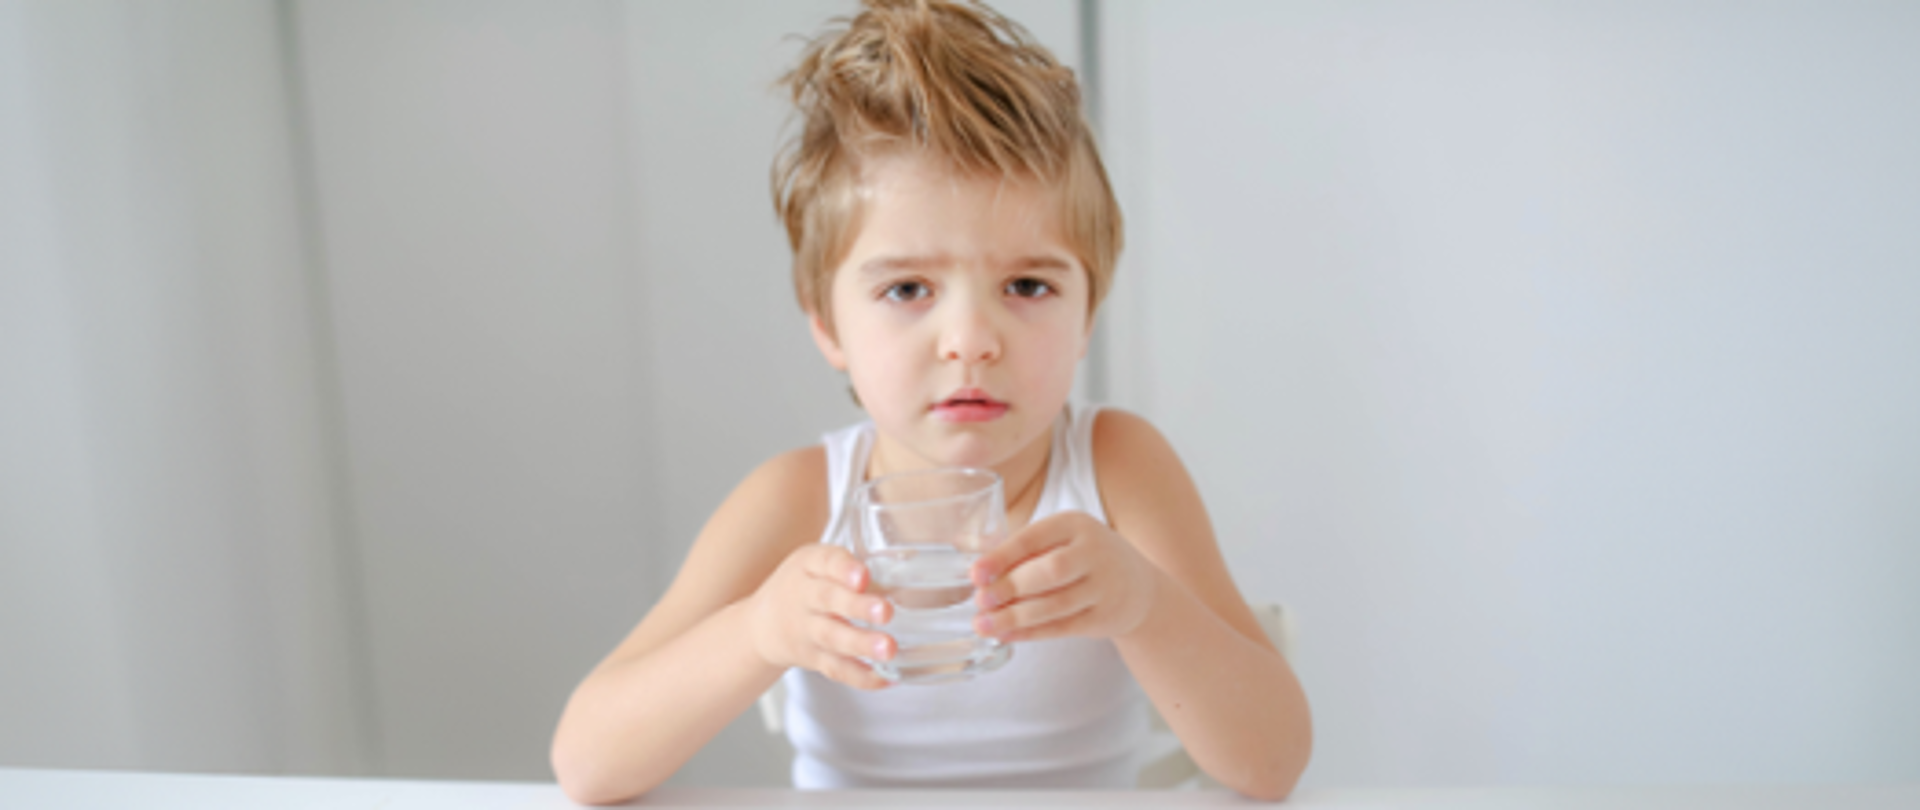 Dziecko pijące wodę z szklanki